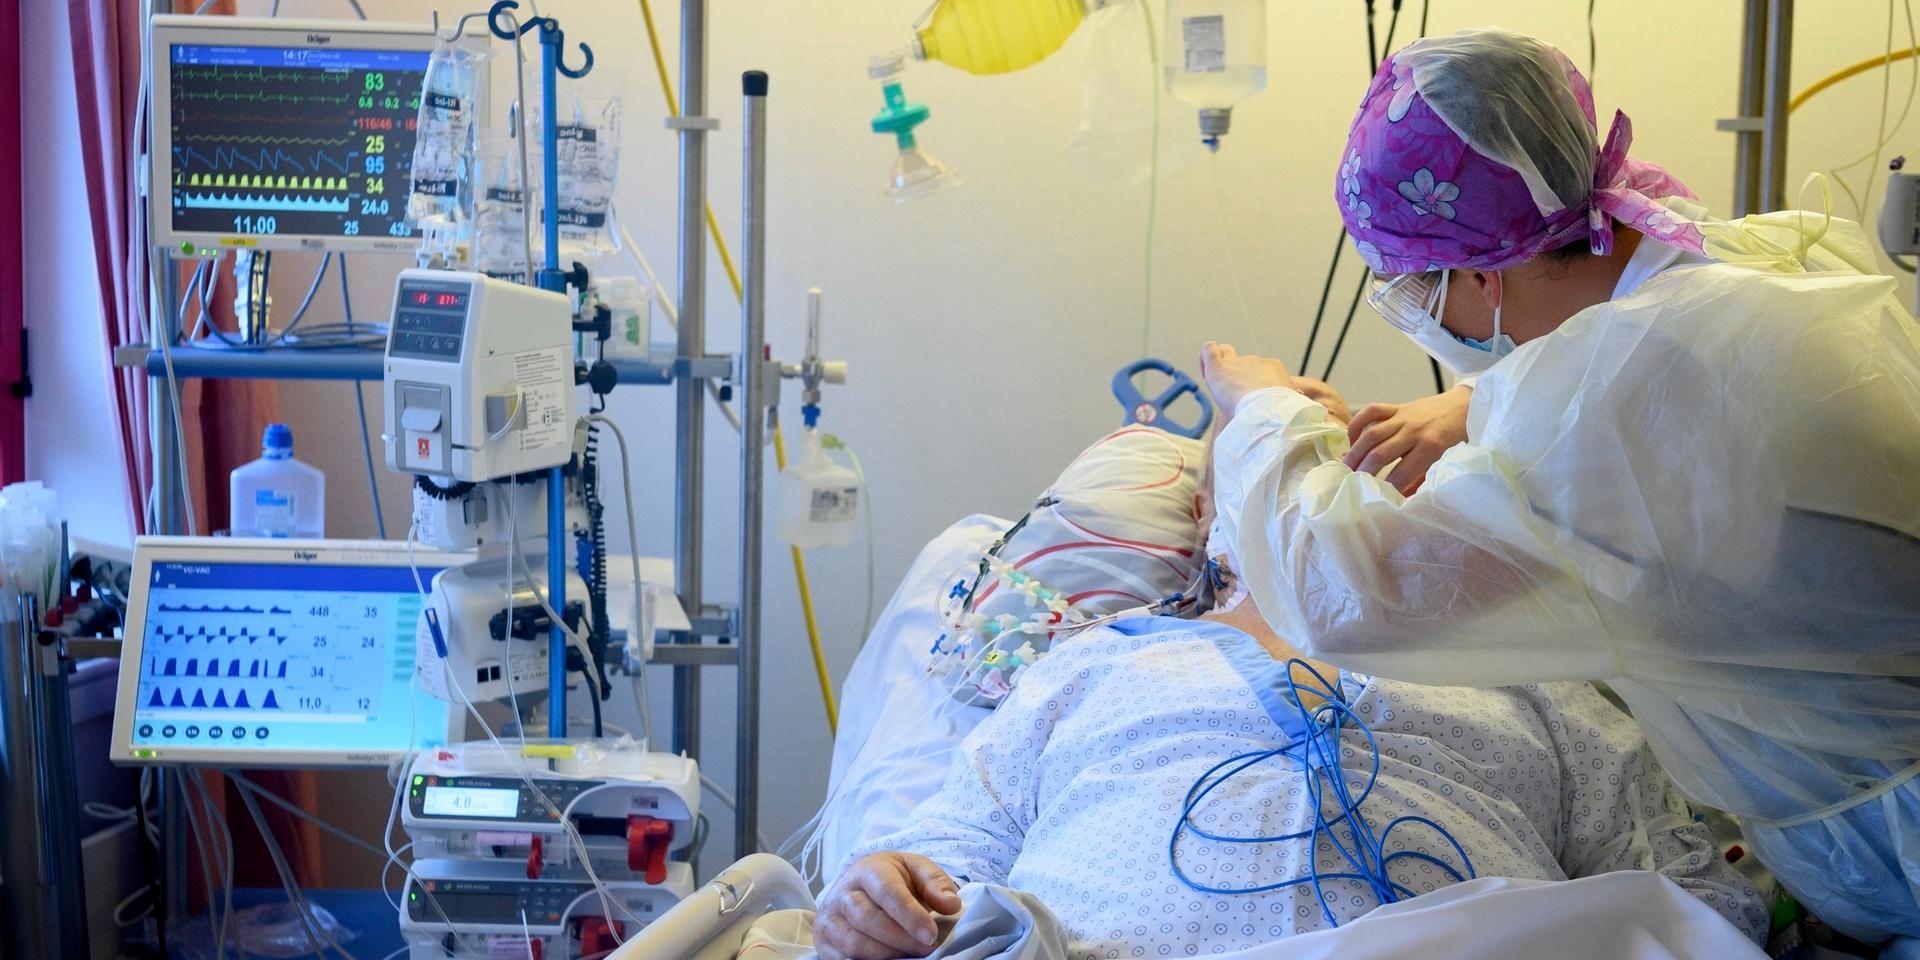 Vårdpersonal tar hand om en patient med covid-19 på ett sjukhus i Yverdon-les-Bains, Schweiz.